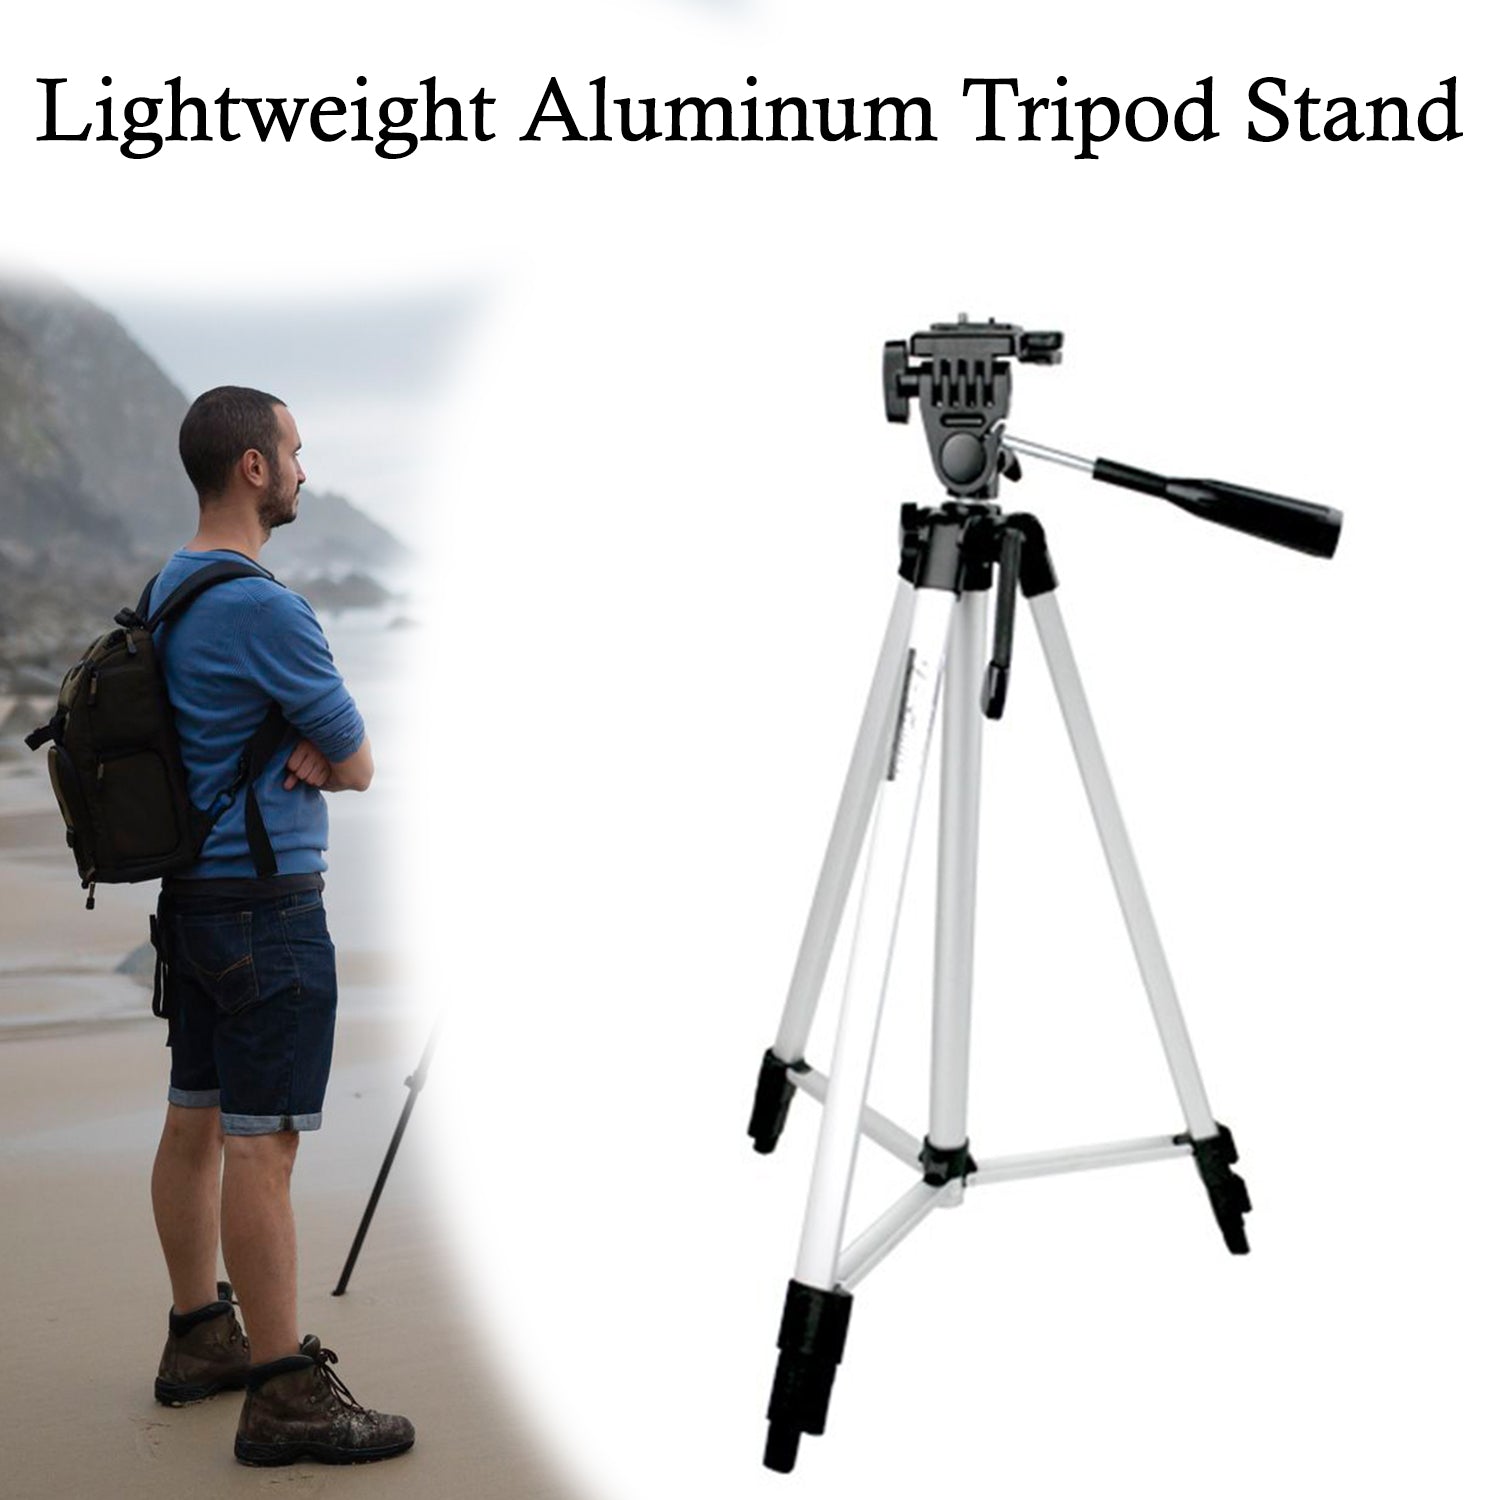 Long Lightweight Aluminum Tripod Stand